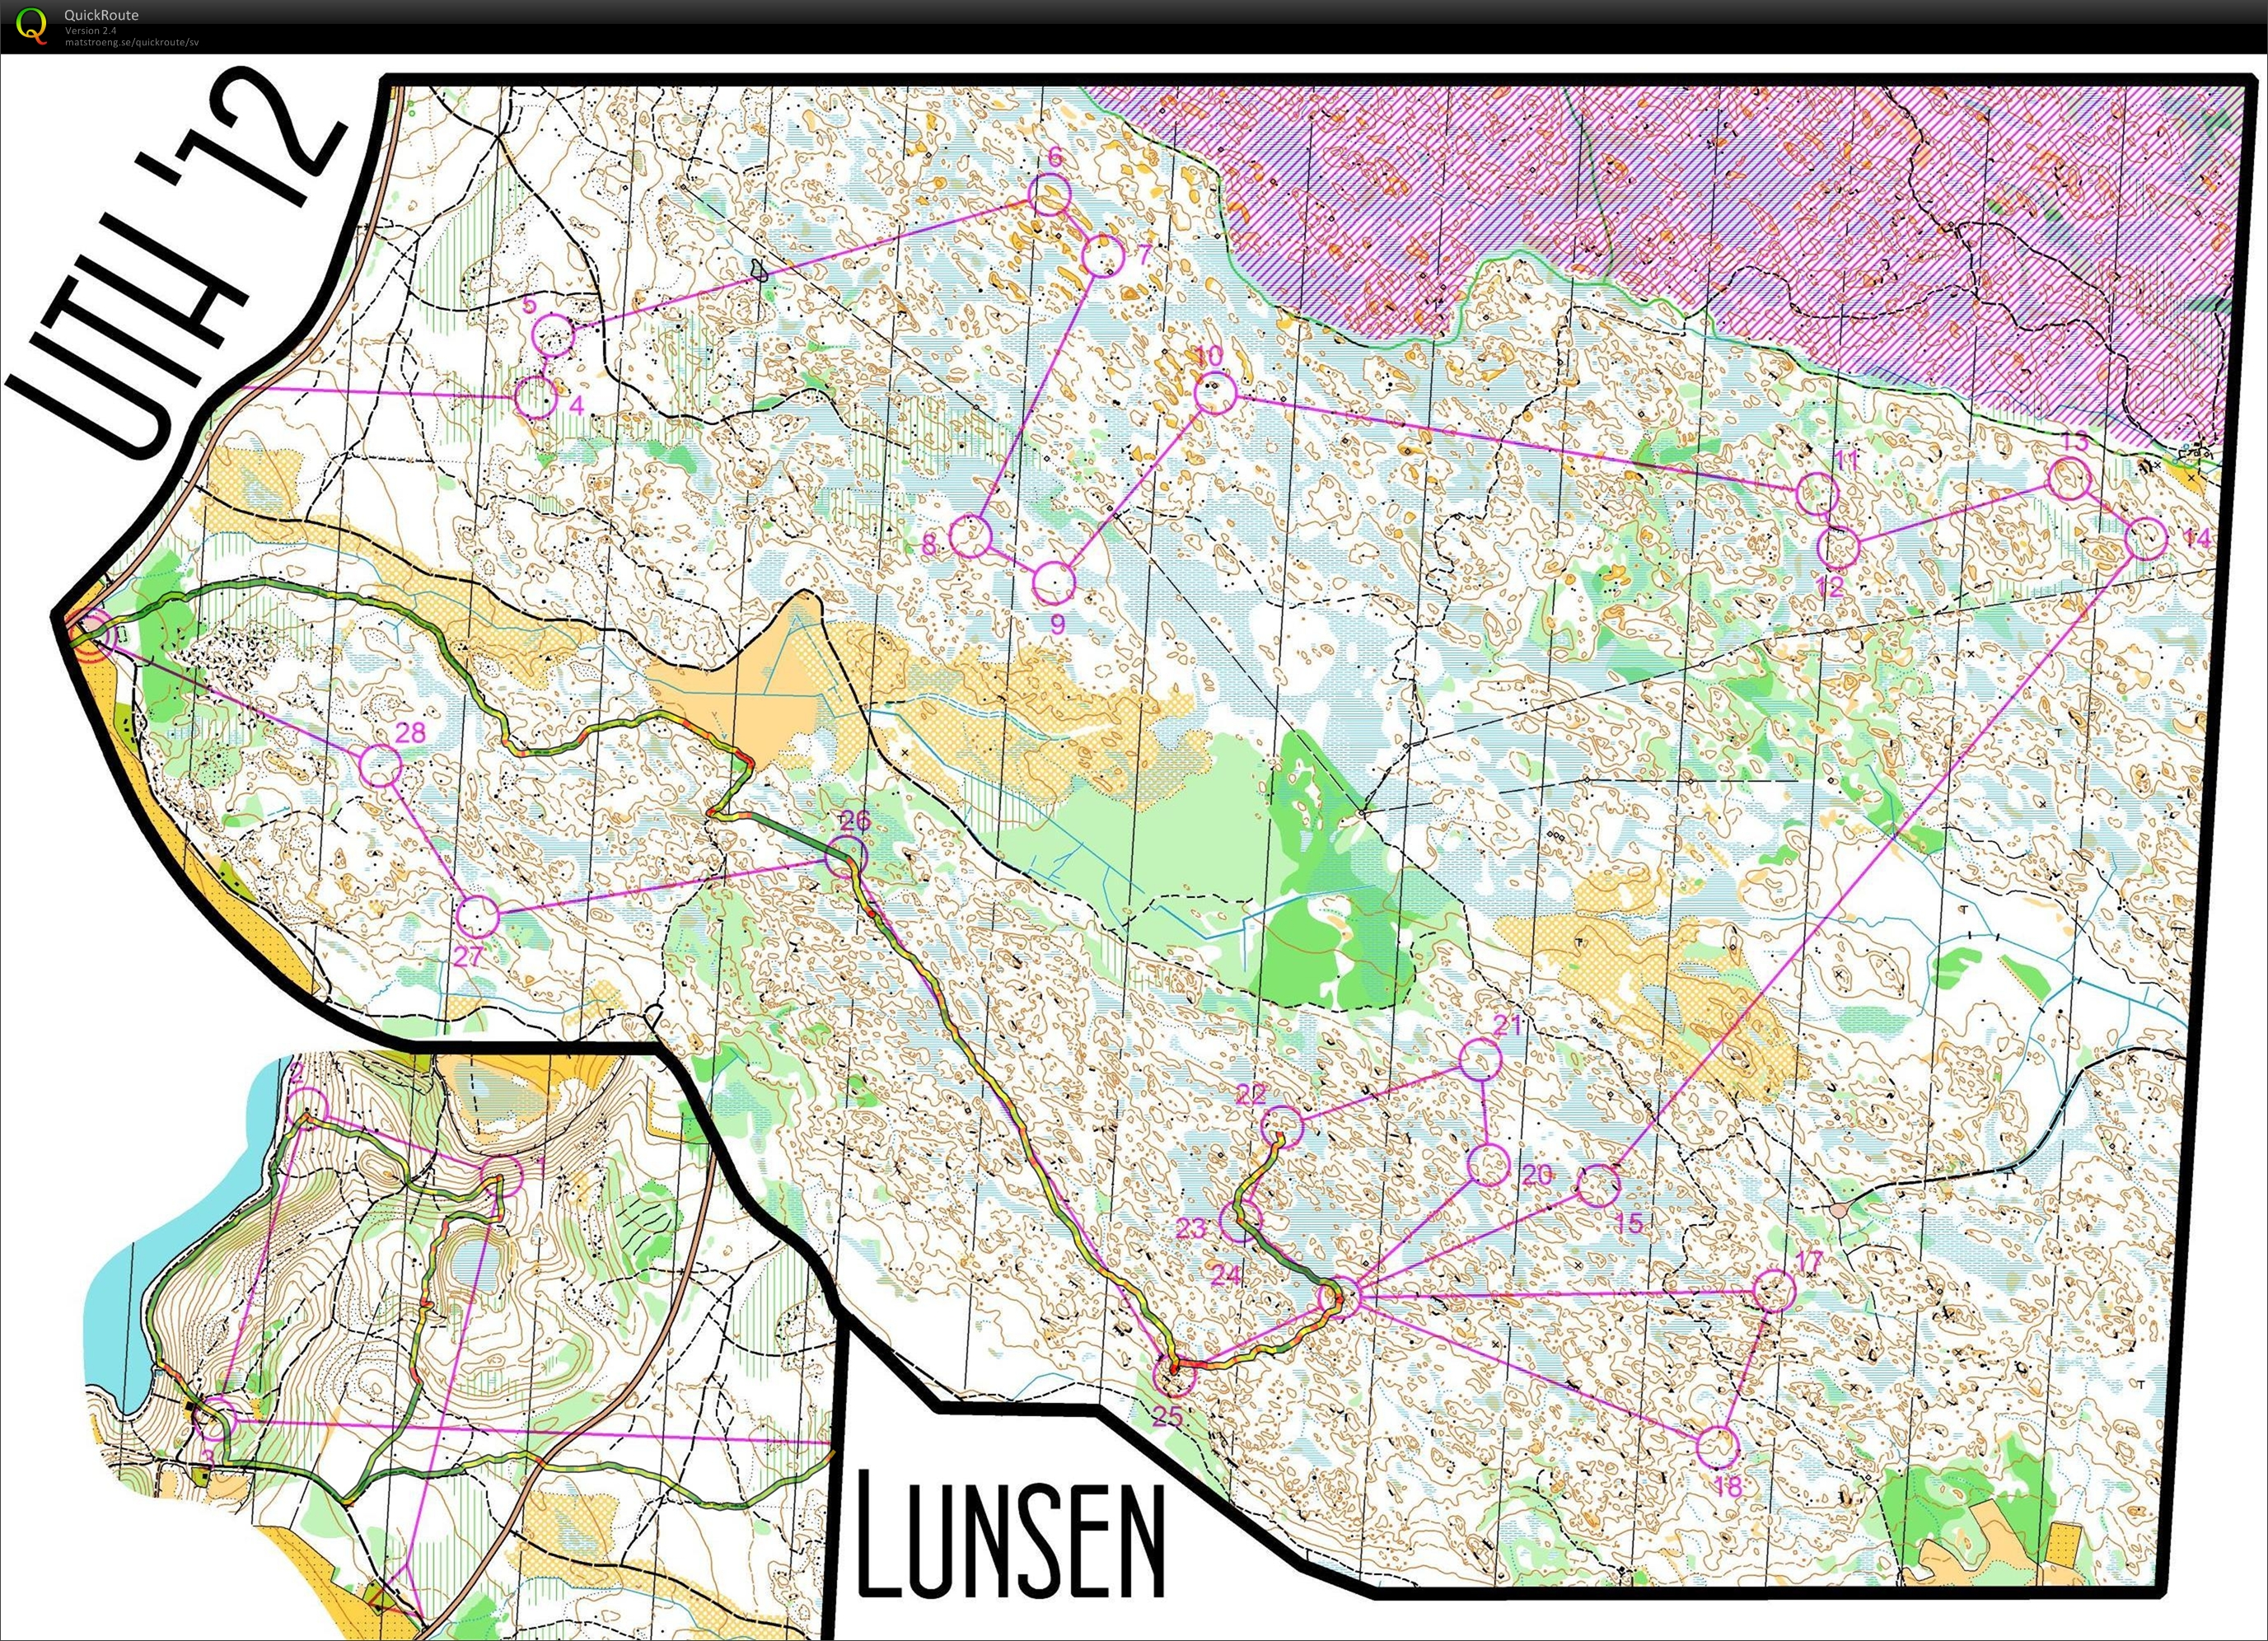 UTH, Lång (01-12-2012)